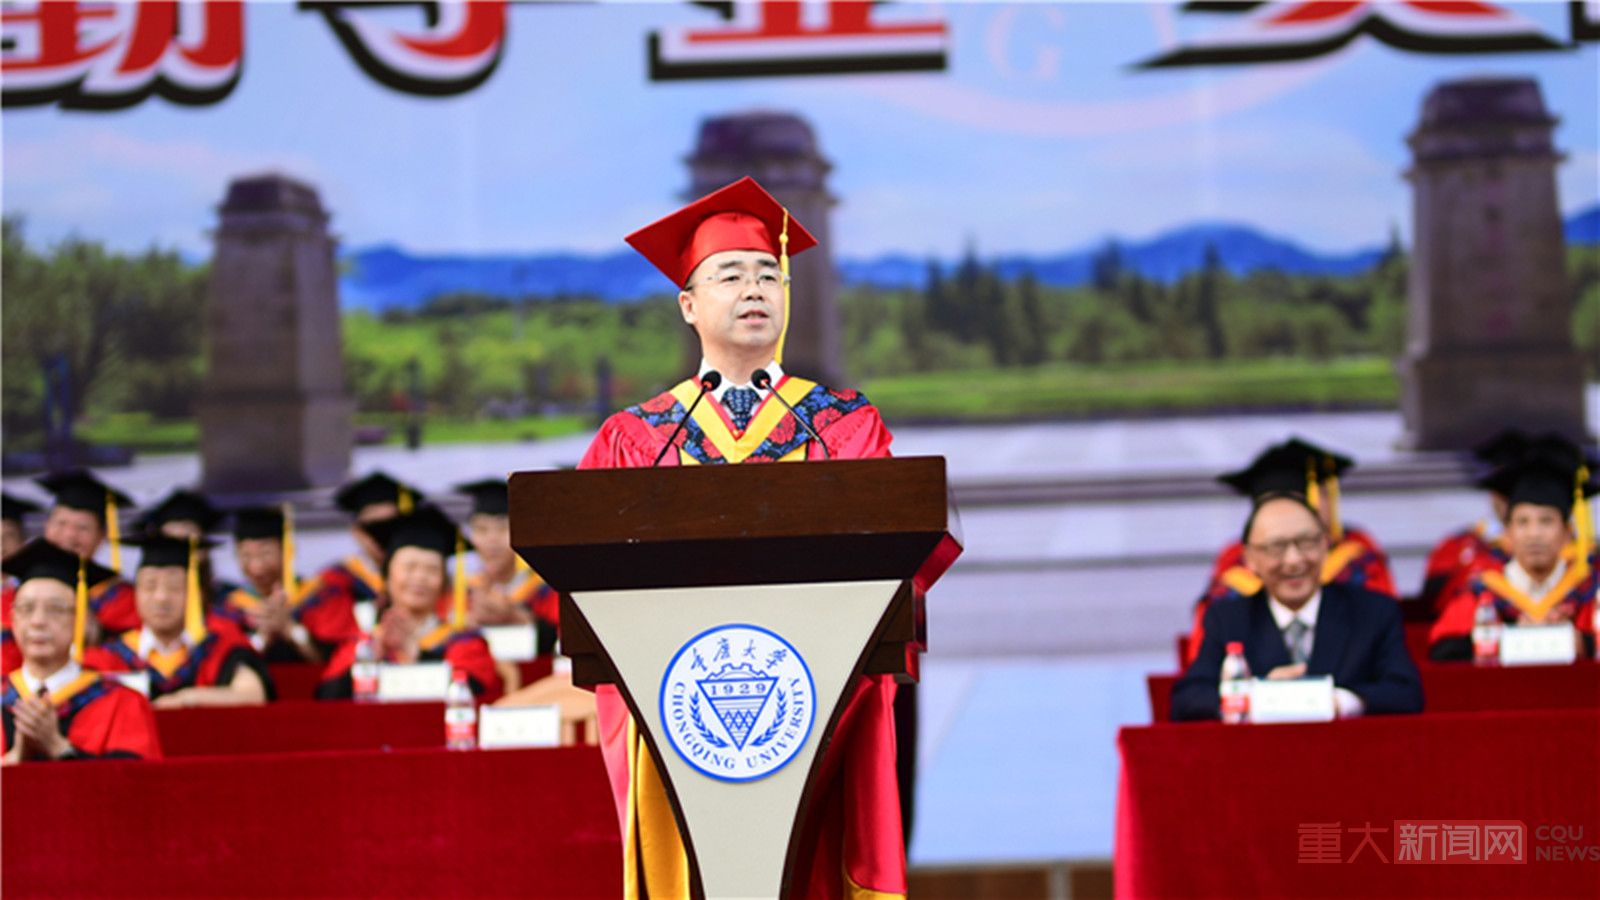 复兴民族，誓作前锋  ——张宗益校长在重庆大学2018届毕业典礼上的讲话